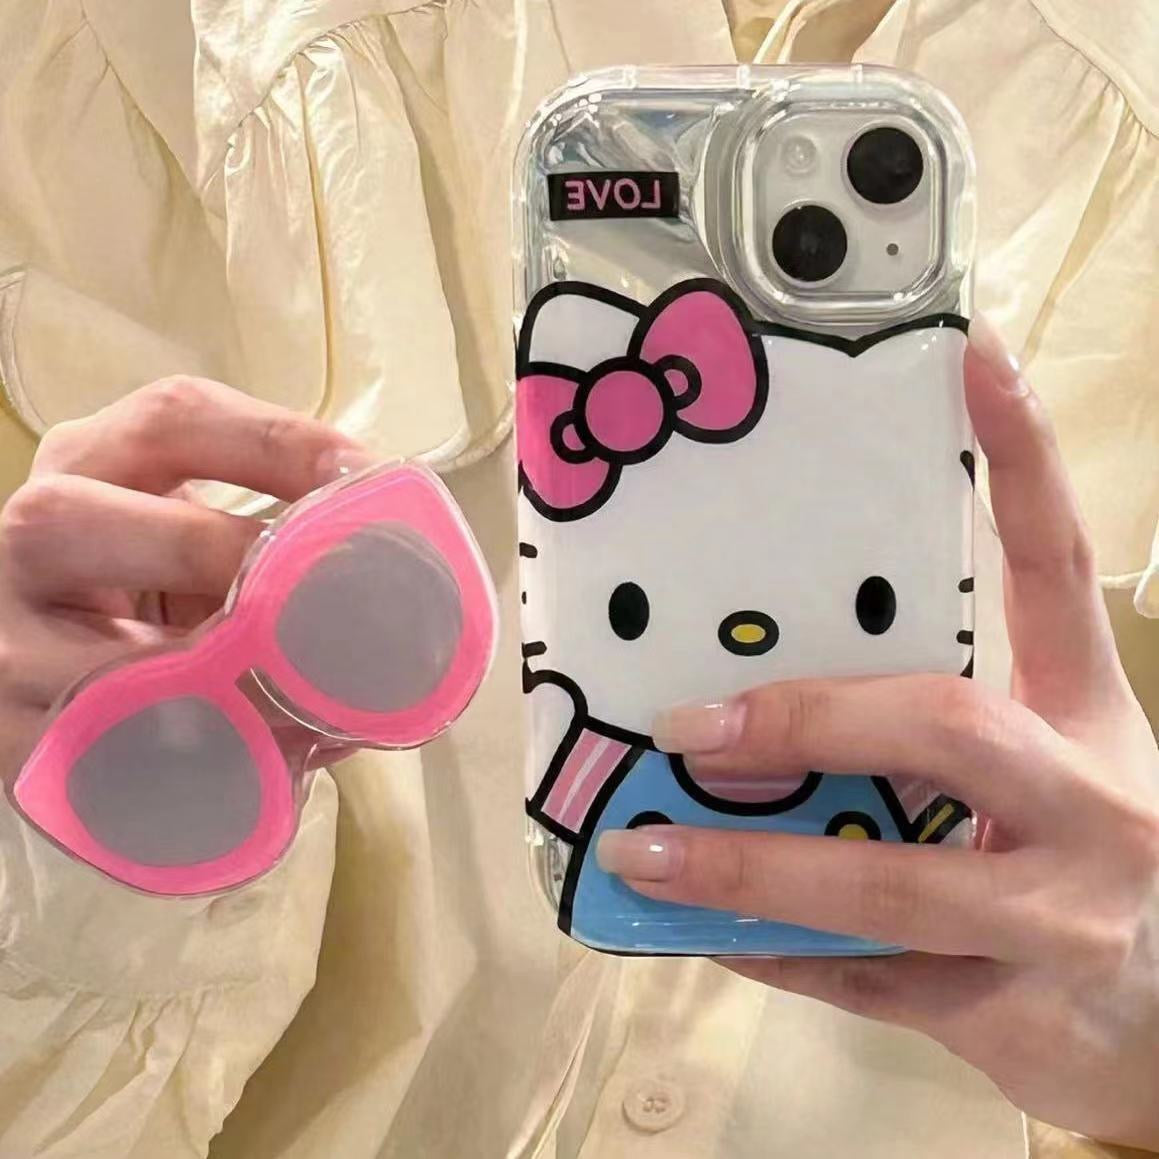 Sassy Kuromi and Hello Kitty Inspired Phone Case